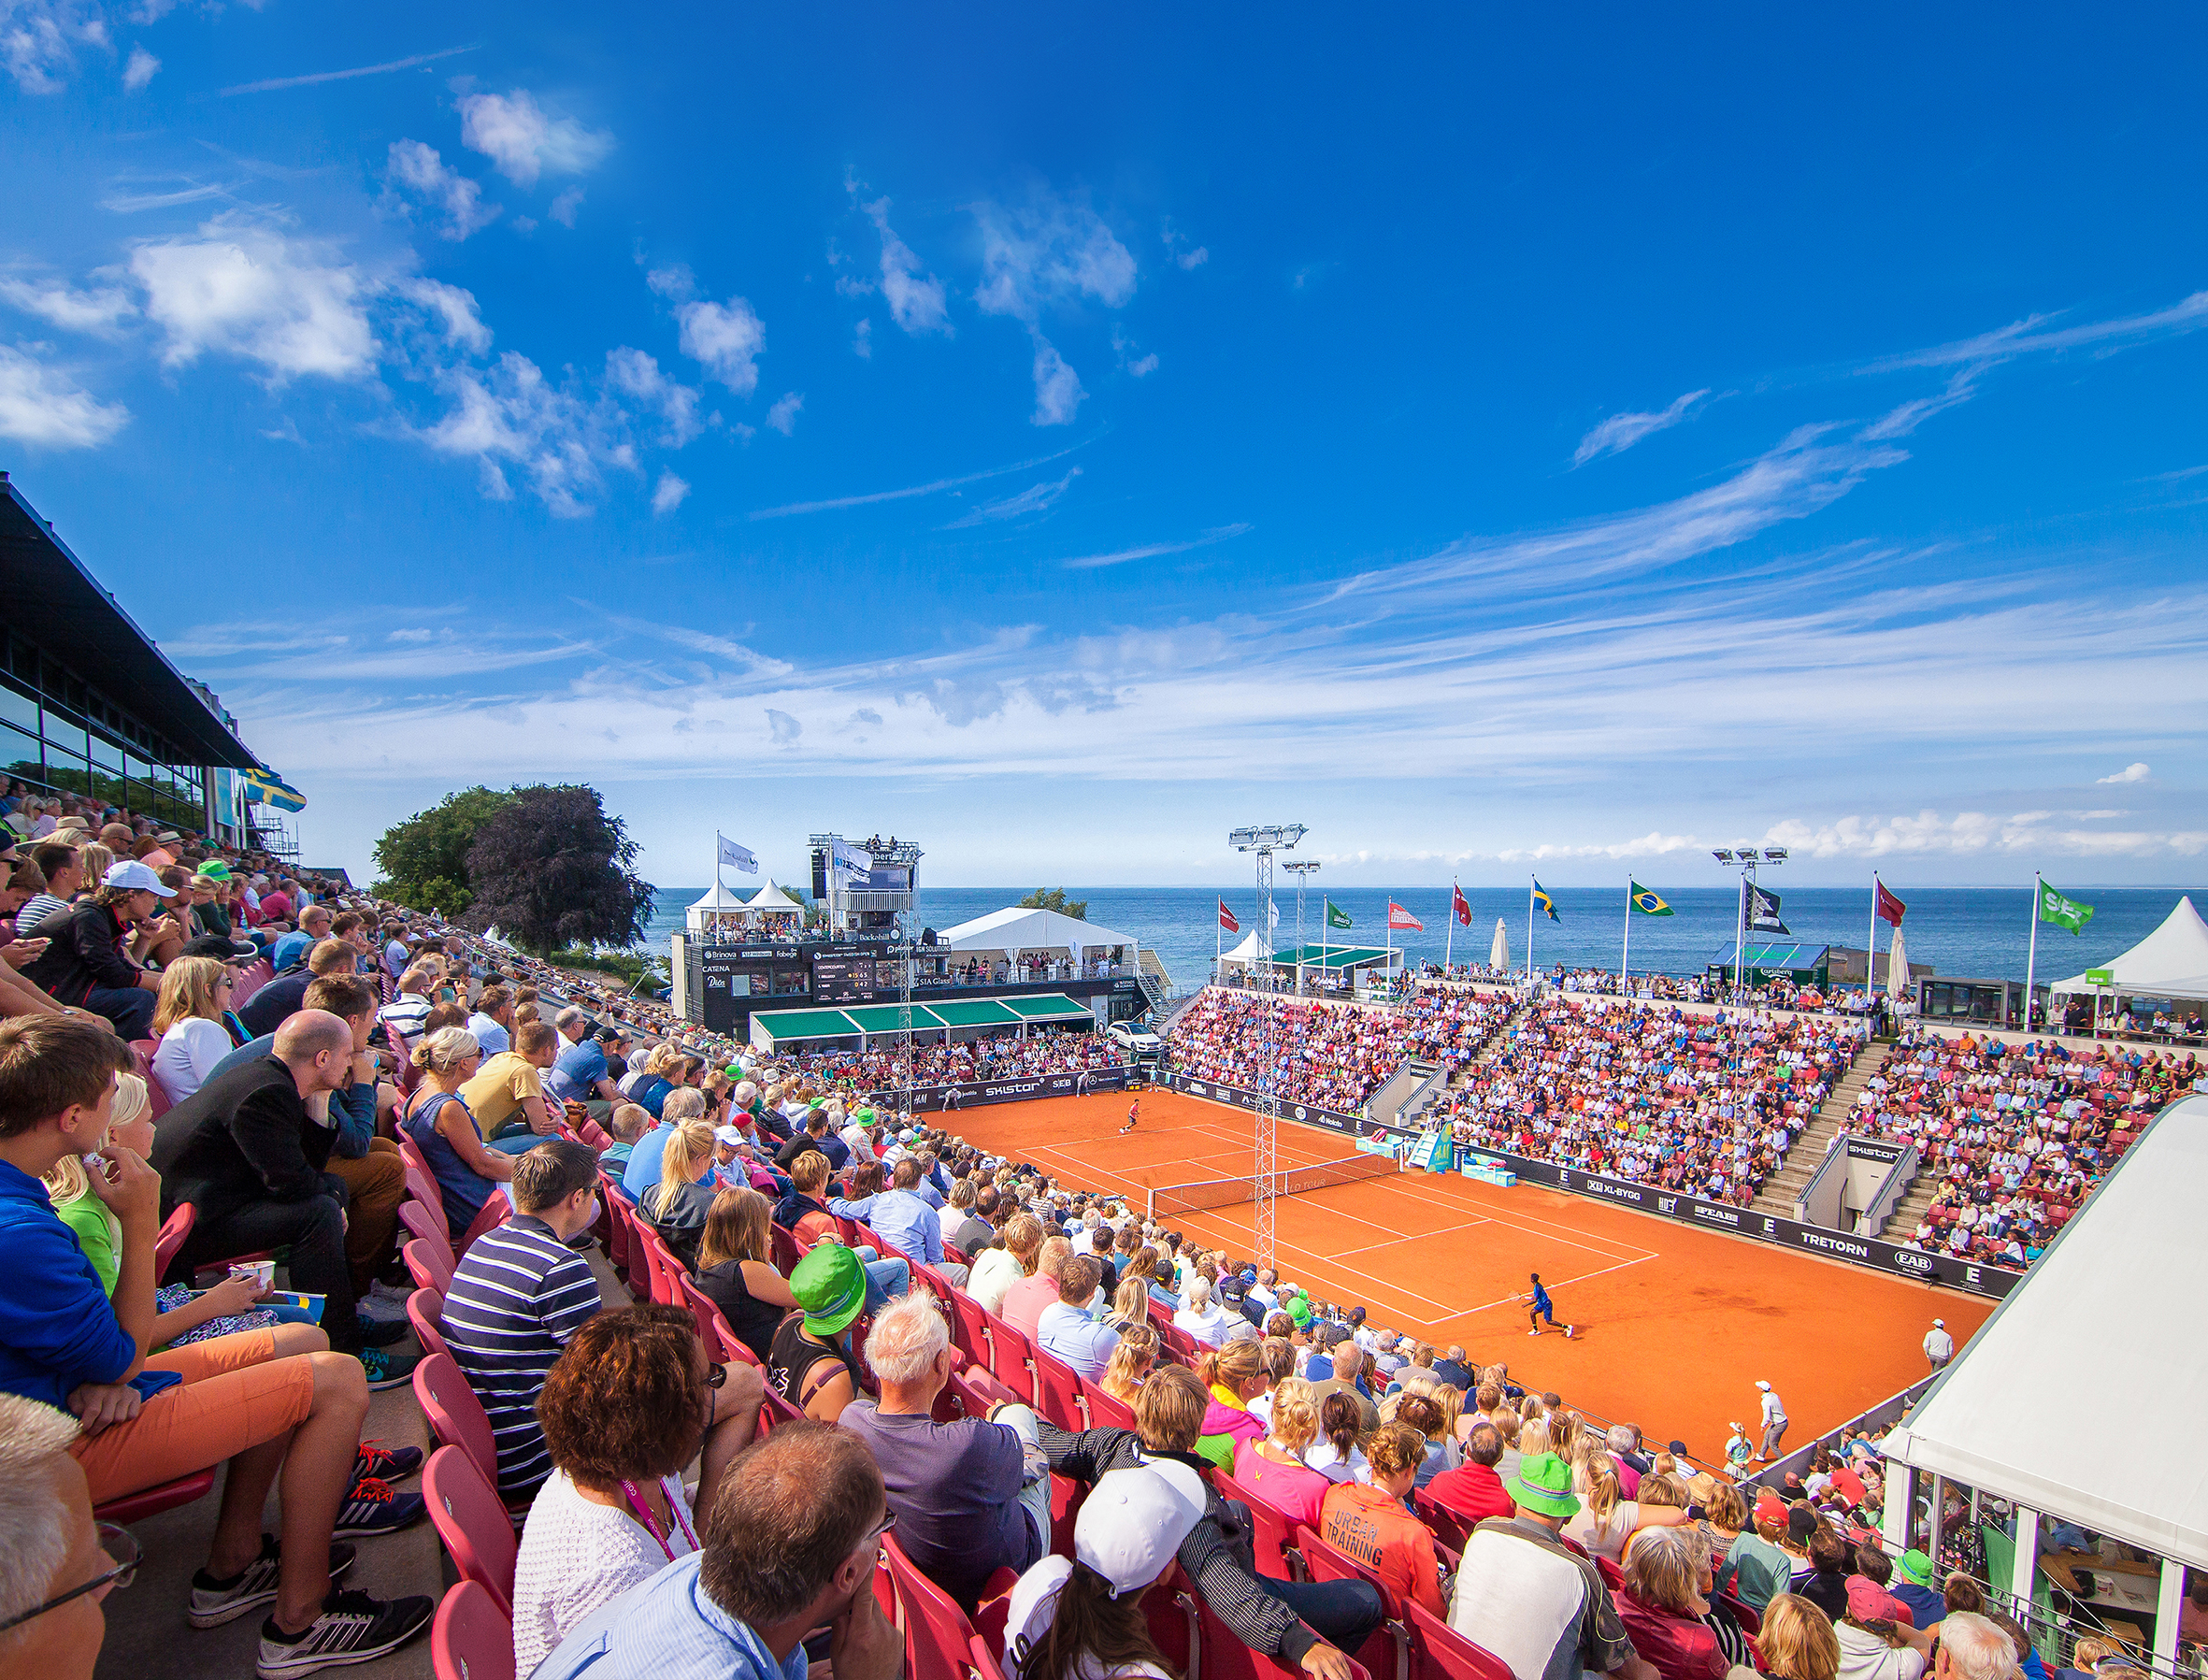 Wawrinka till Swedish Open: ”Bästa startfältet på många år”